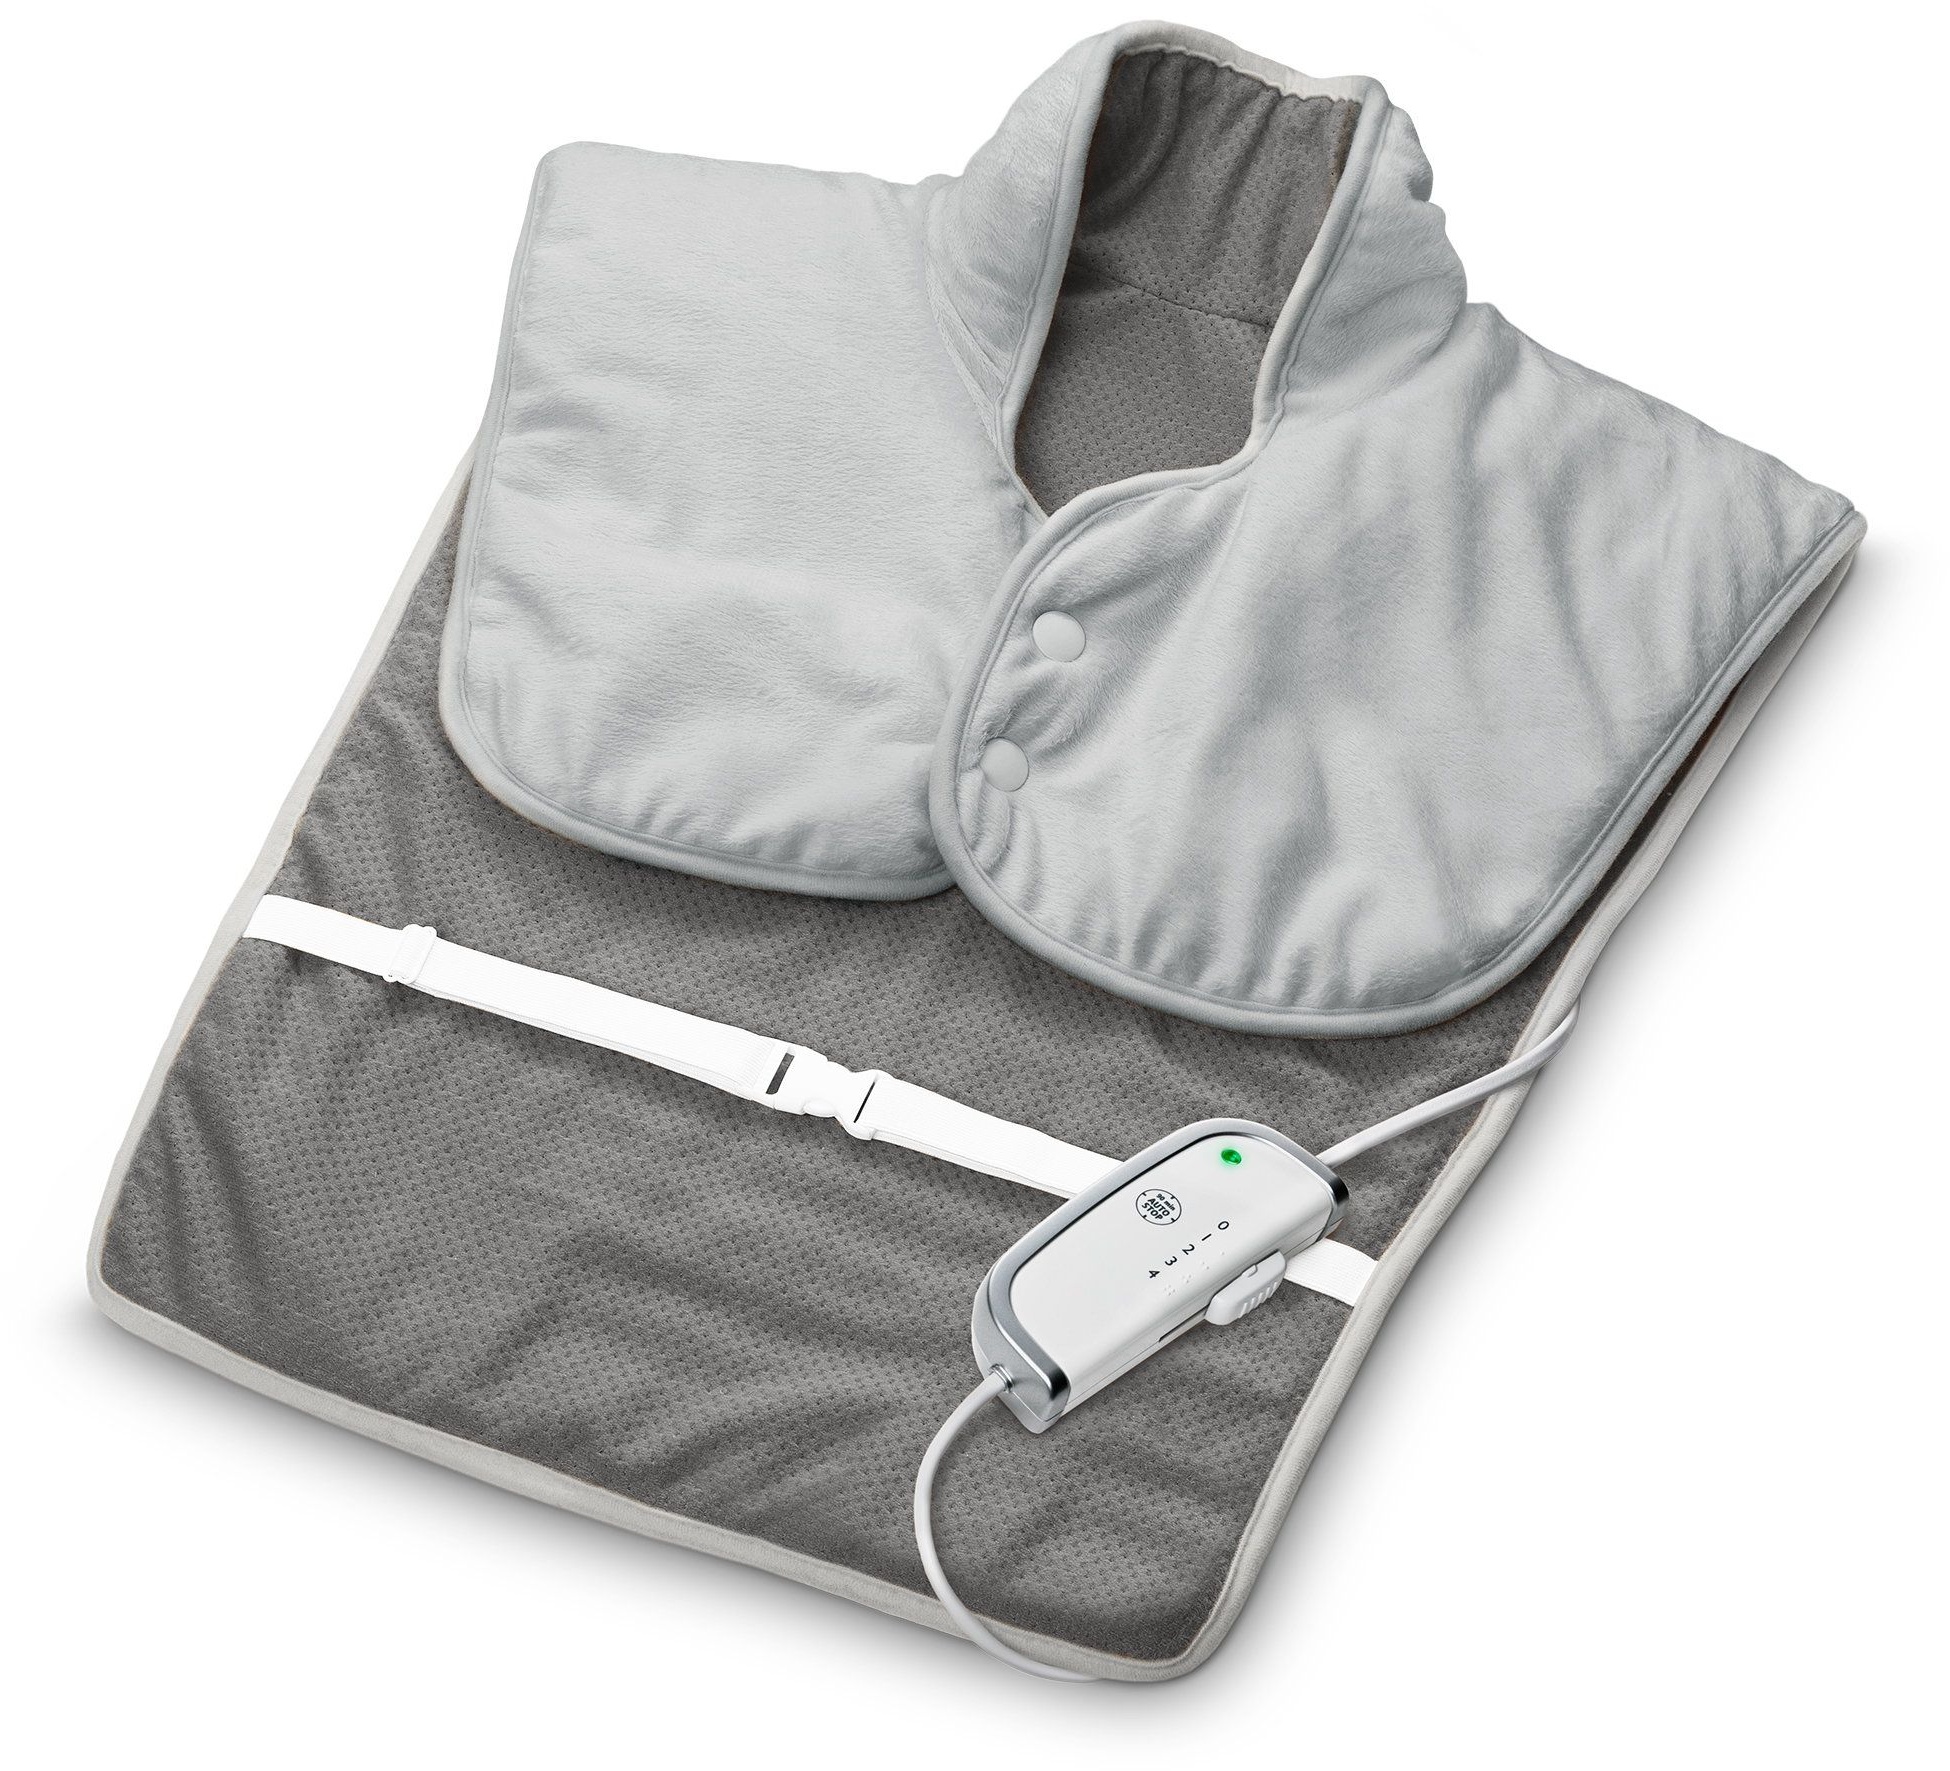 medisana HP 630 Nacken, Schulter und Rückenheizkissen | 4 Temperaturstufen Überhitzungschutz 1 St